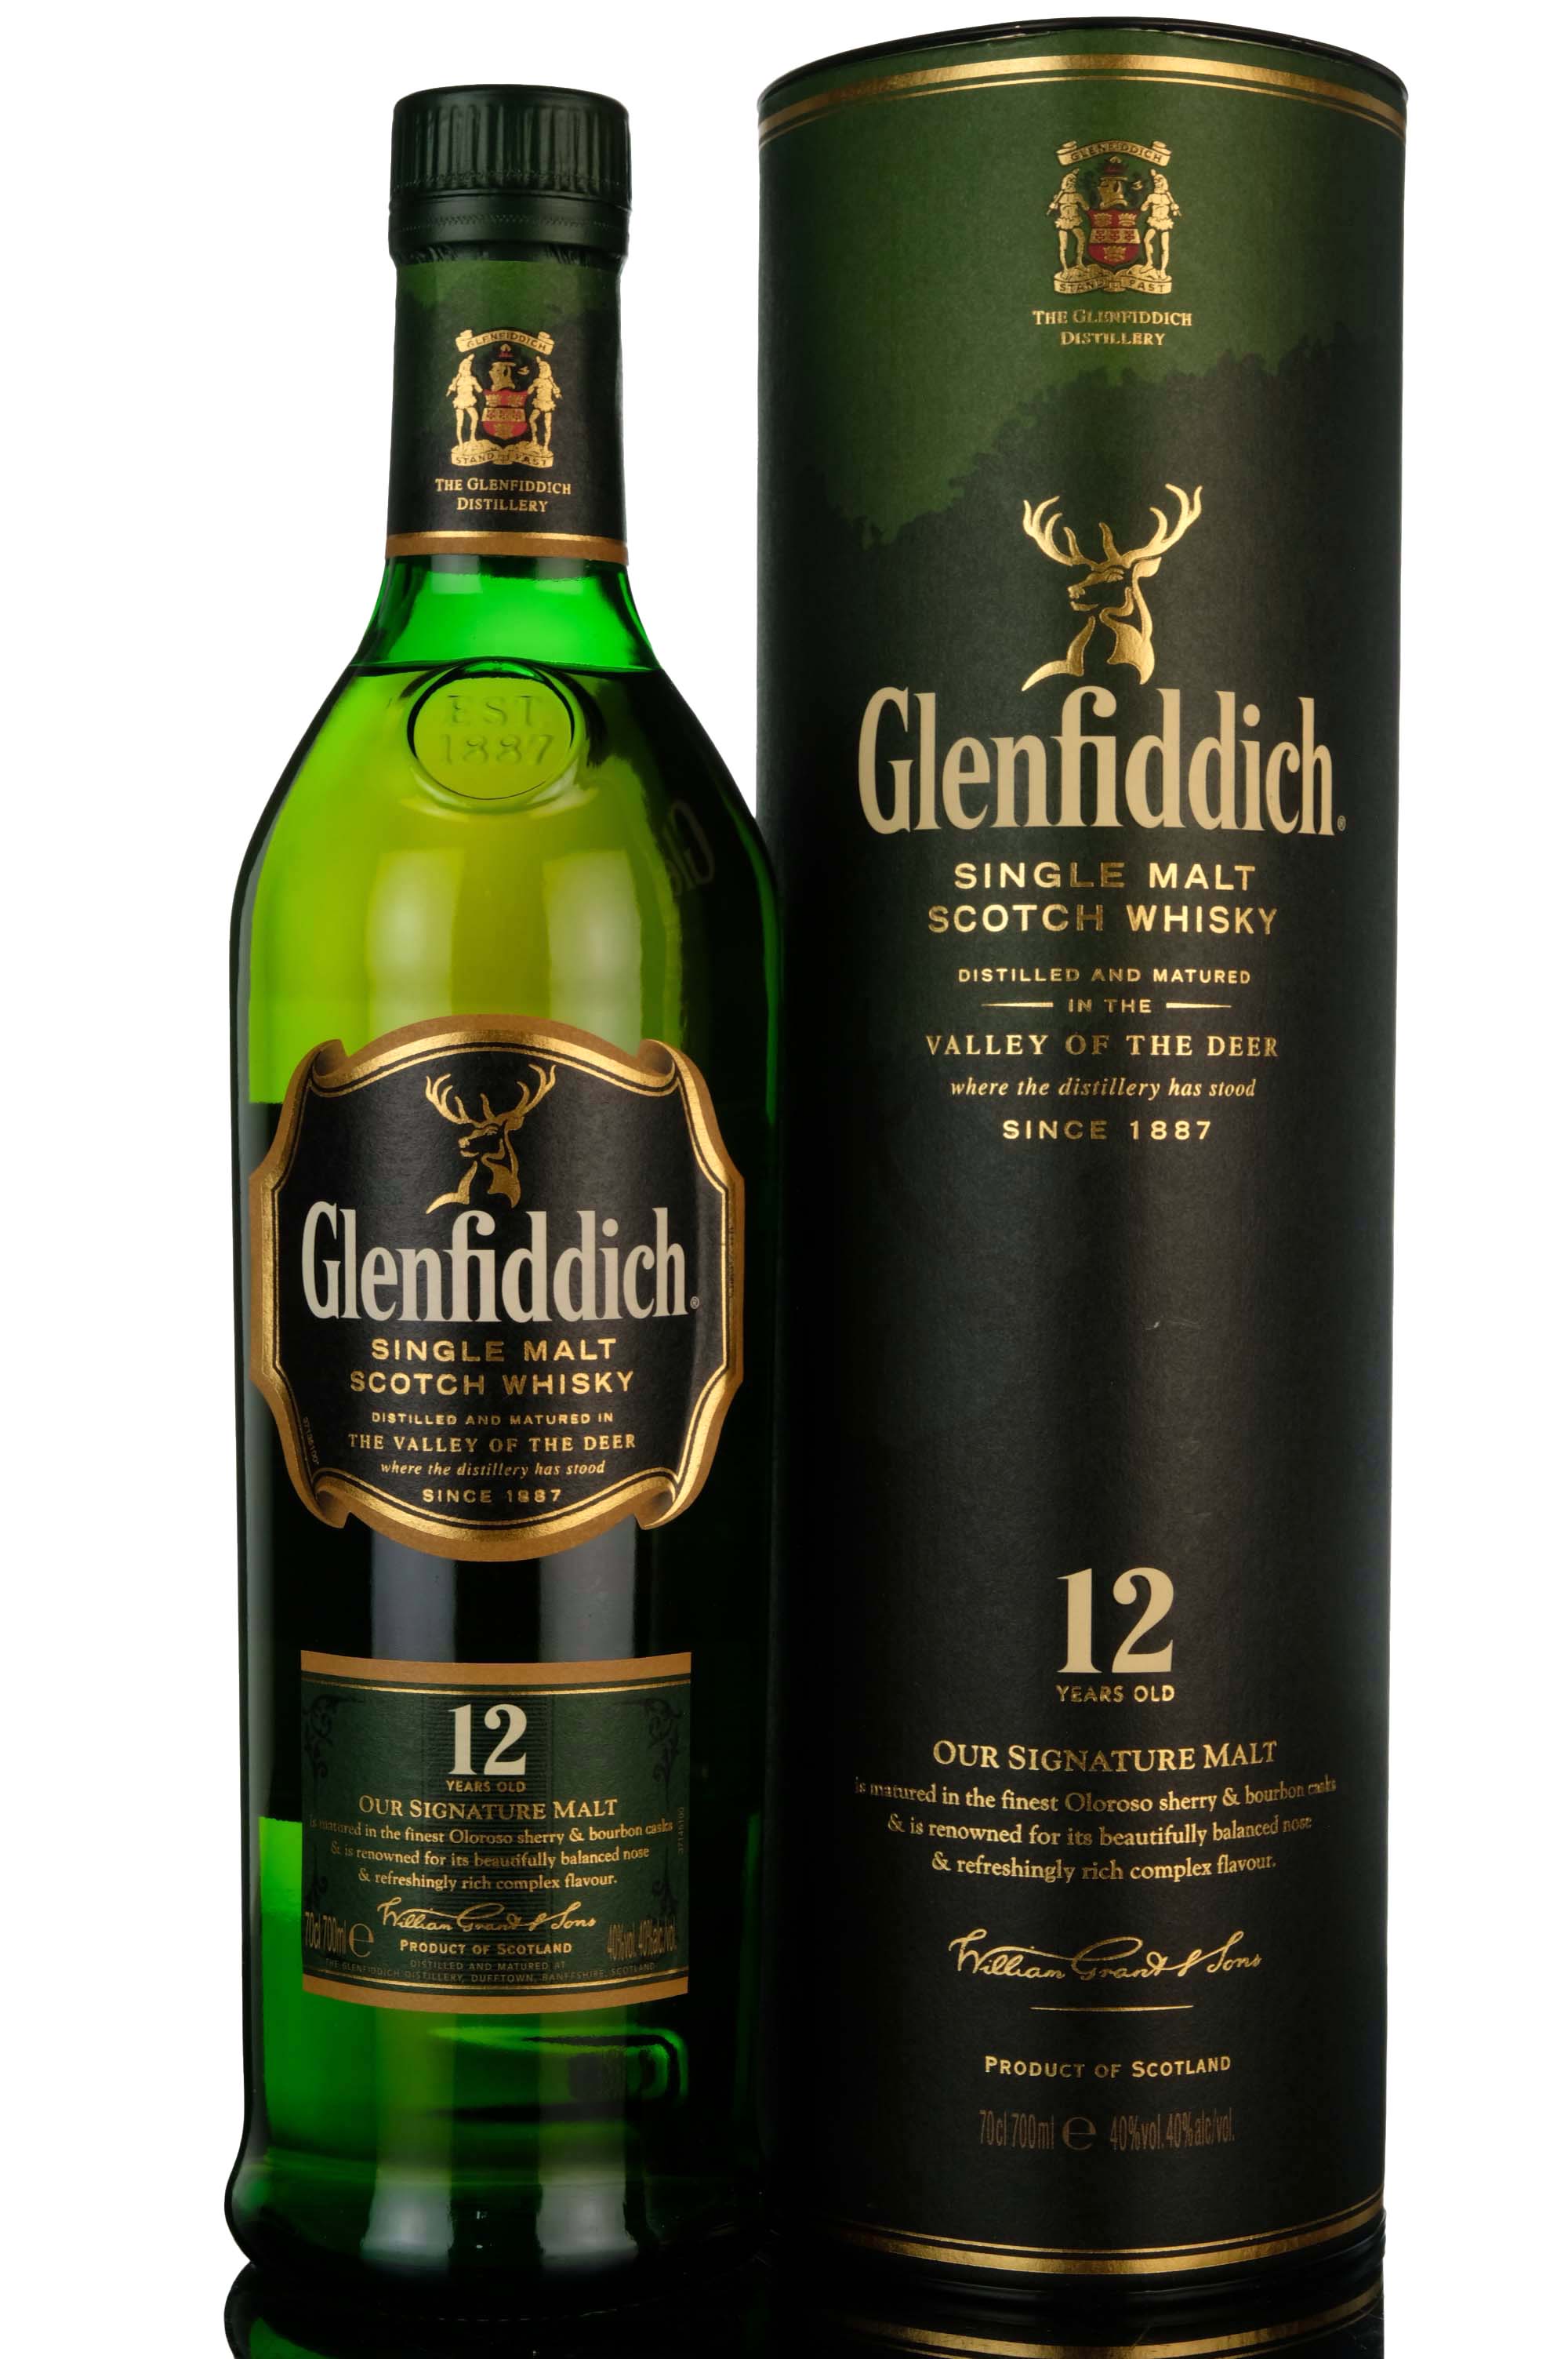 Glenfiddich 12 Year Old